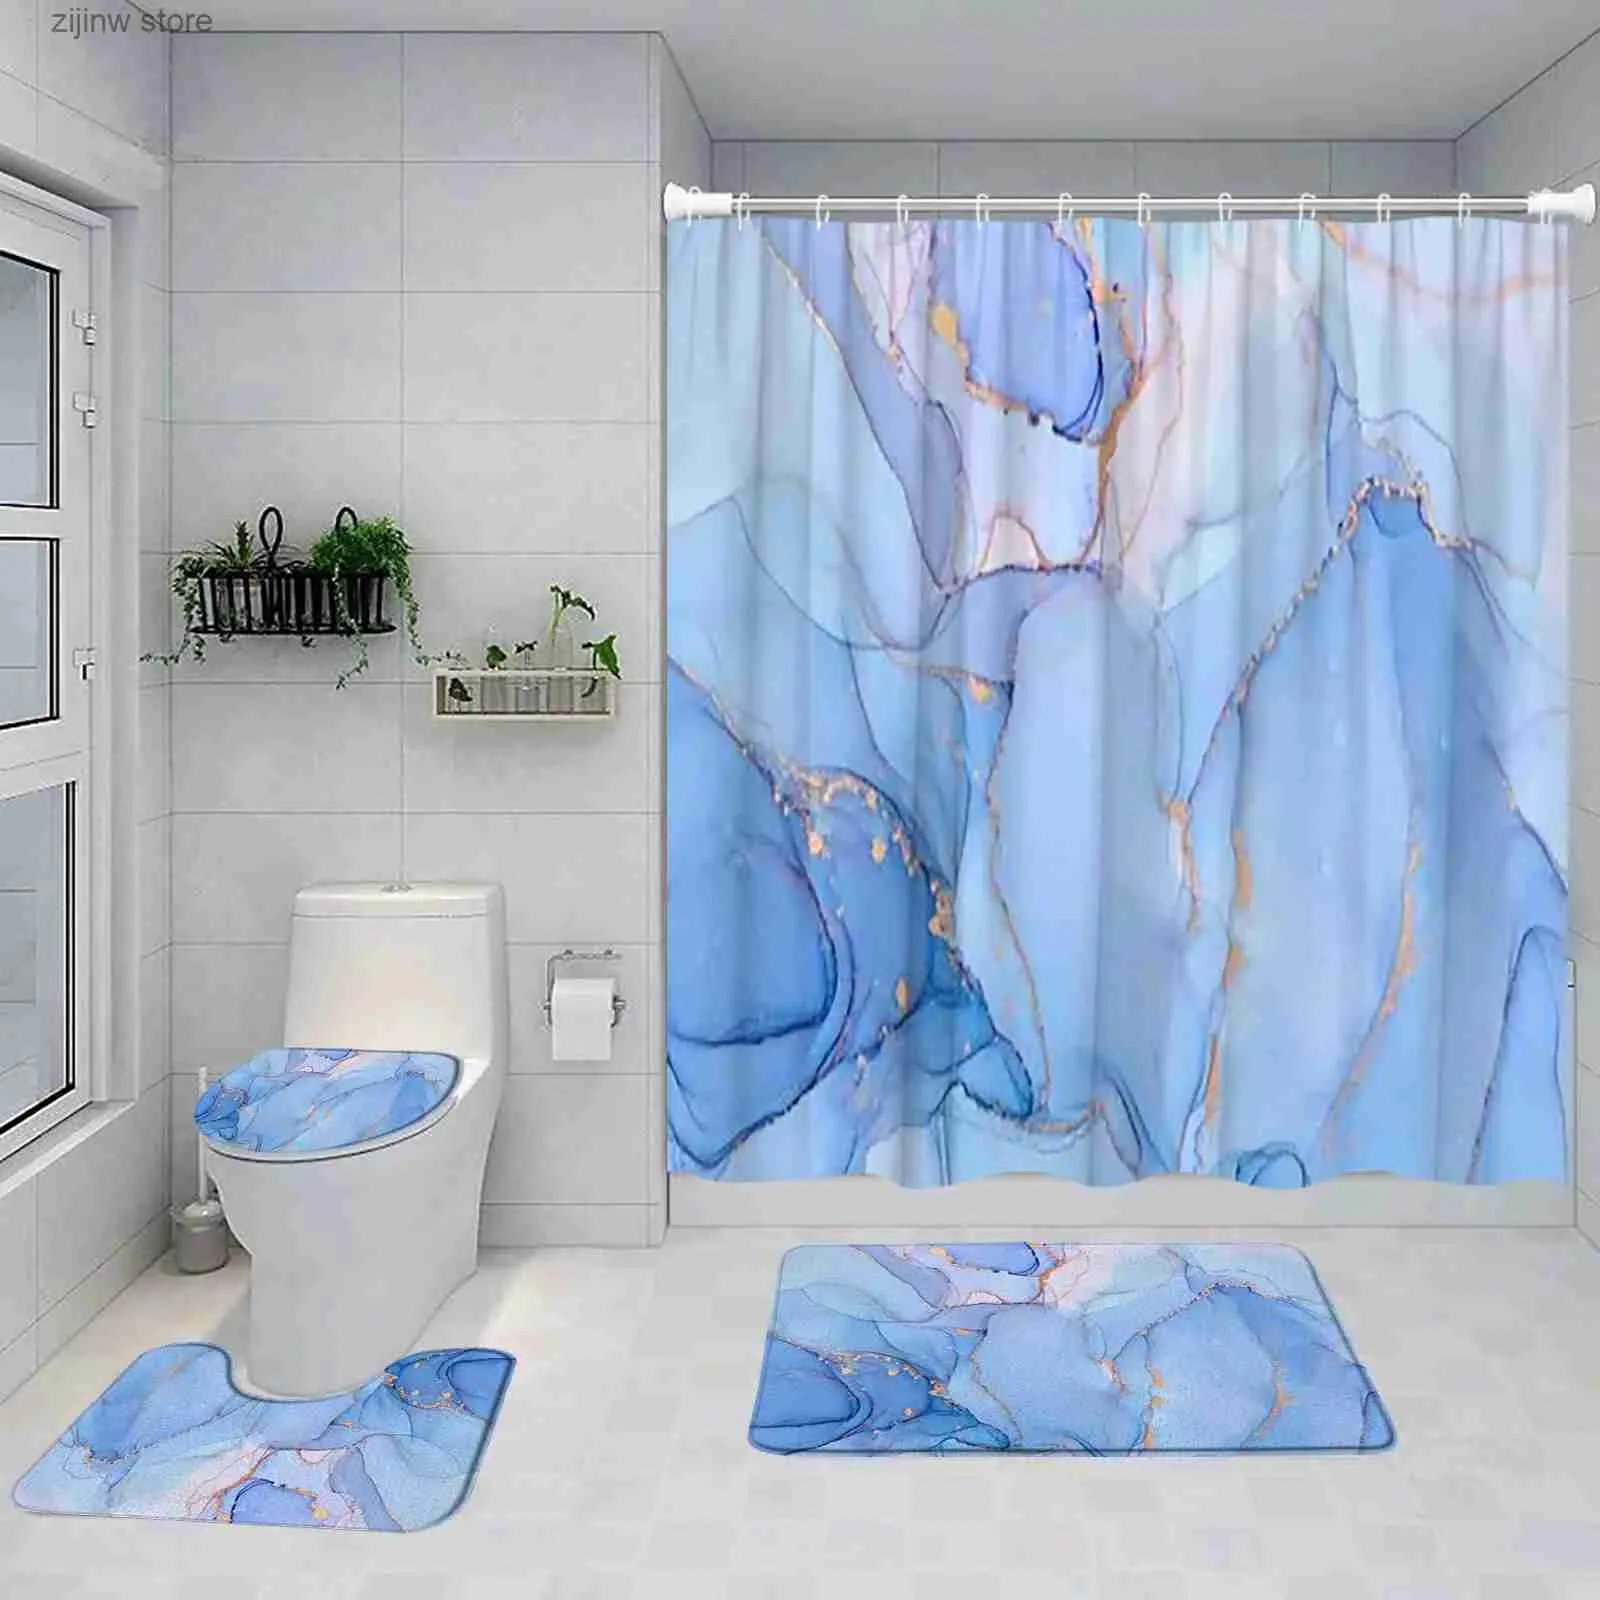 샤워 커튼 블루 대리석 샤워 커튼 세트 예술 초록 페인트 페인트 현대 욕실 장식 목욕 목욕 매트 받침대 깔개가 아닌 카펫 화장실 뚜껑 뚜껑 커버 Y240316